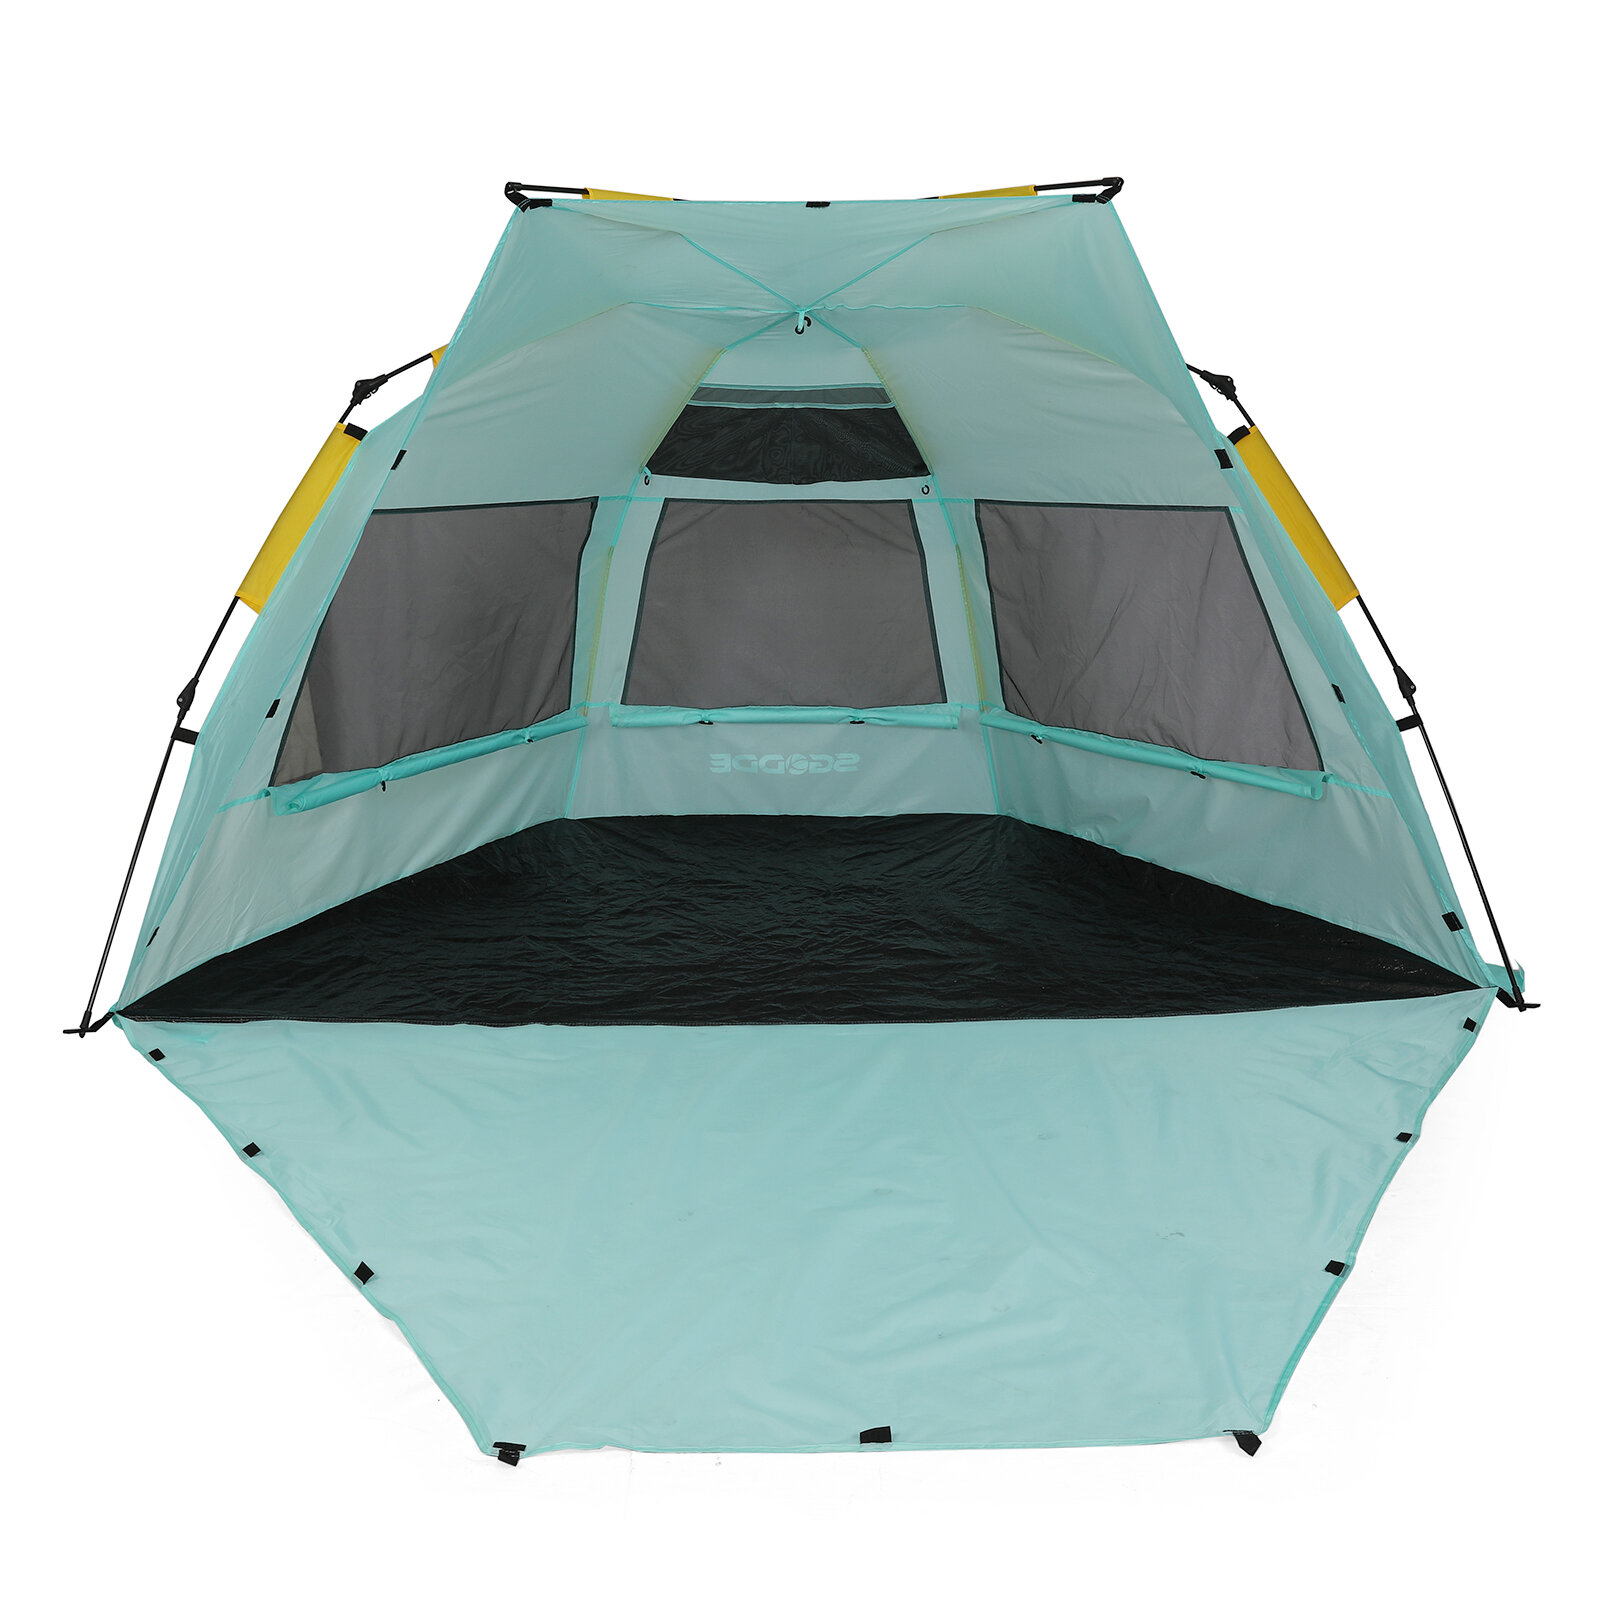 Tenda de camping e praia à prova d'água e resistente aos raios UV UP50+ para 3-4 pessoas.